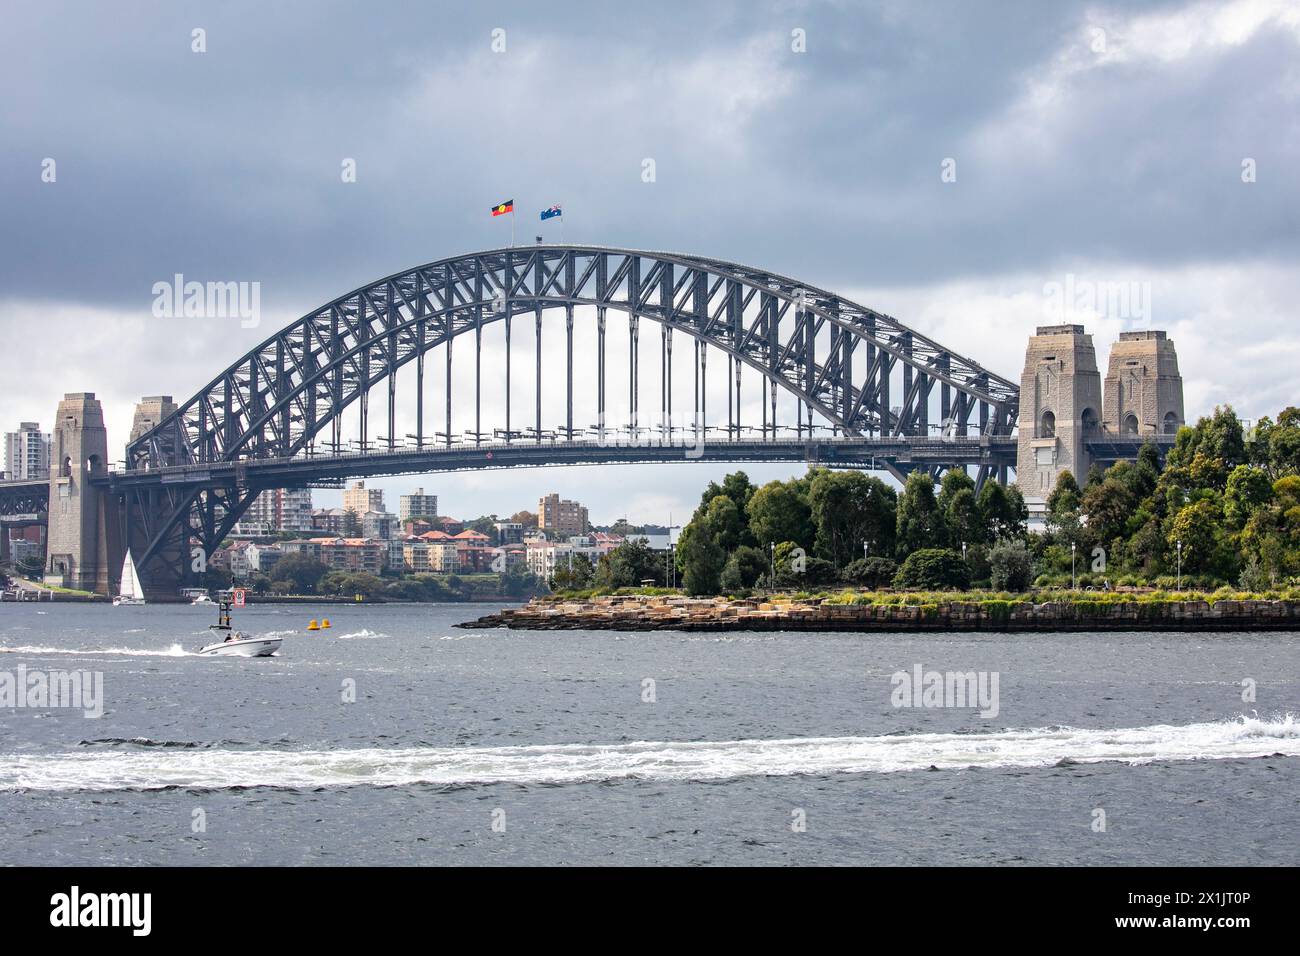 Il famoso Sydney Harbour Bridge, il ponte ad arco in acciaio più alto del mondo e costruito dall'azienda britannica Dorman Long, è stato inaugurato nel 1932 a Sydney Foto Stock